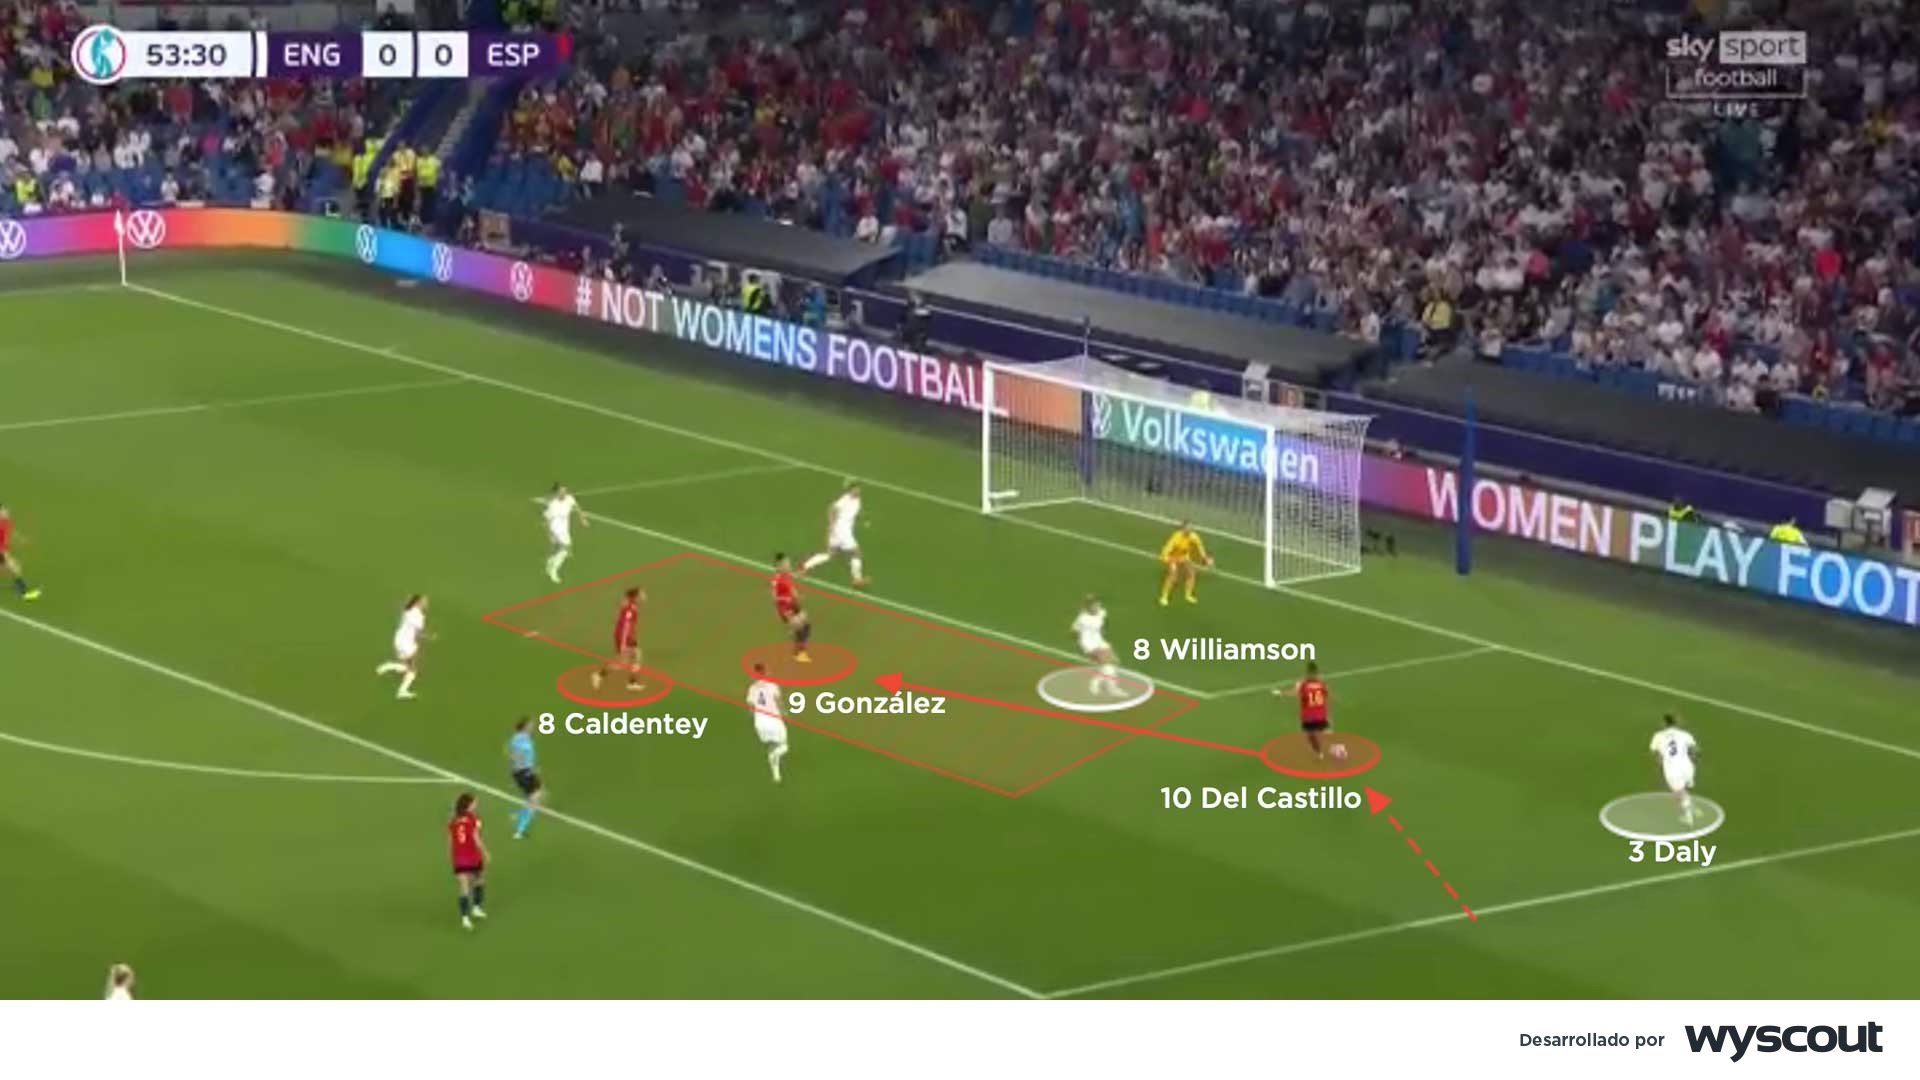 Avance de España frente a Inglaterra en la Eurocopa Femenina 2022. Centro de Athenea del Castillo que terminó en gol de González